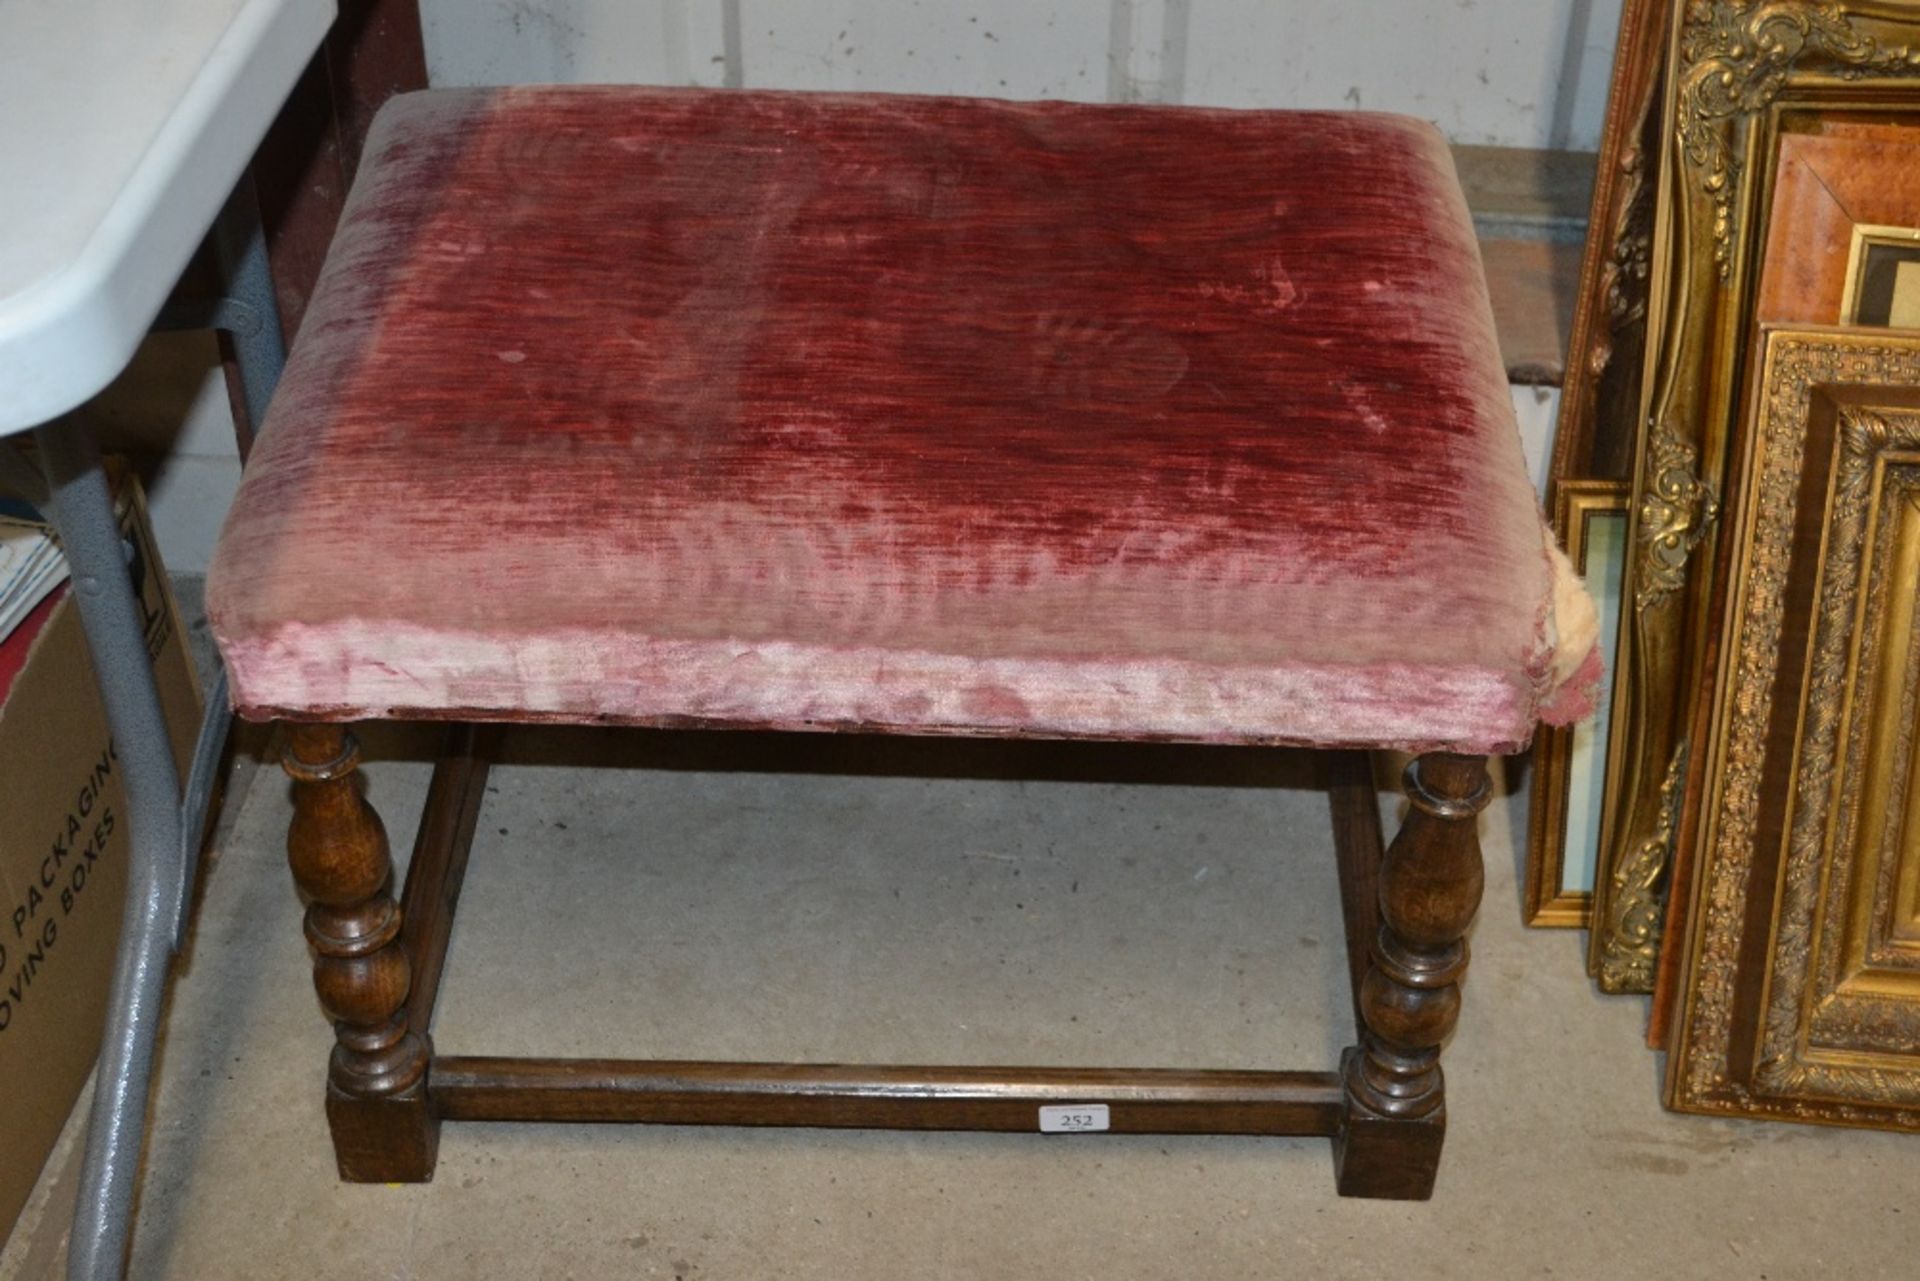 An oak upholstered stool